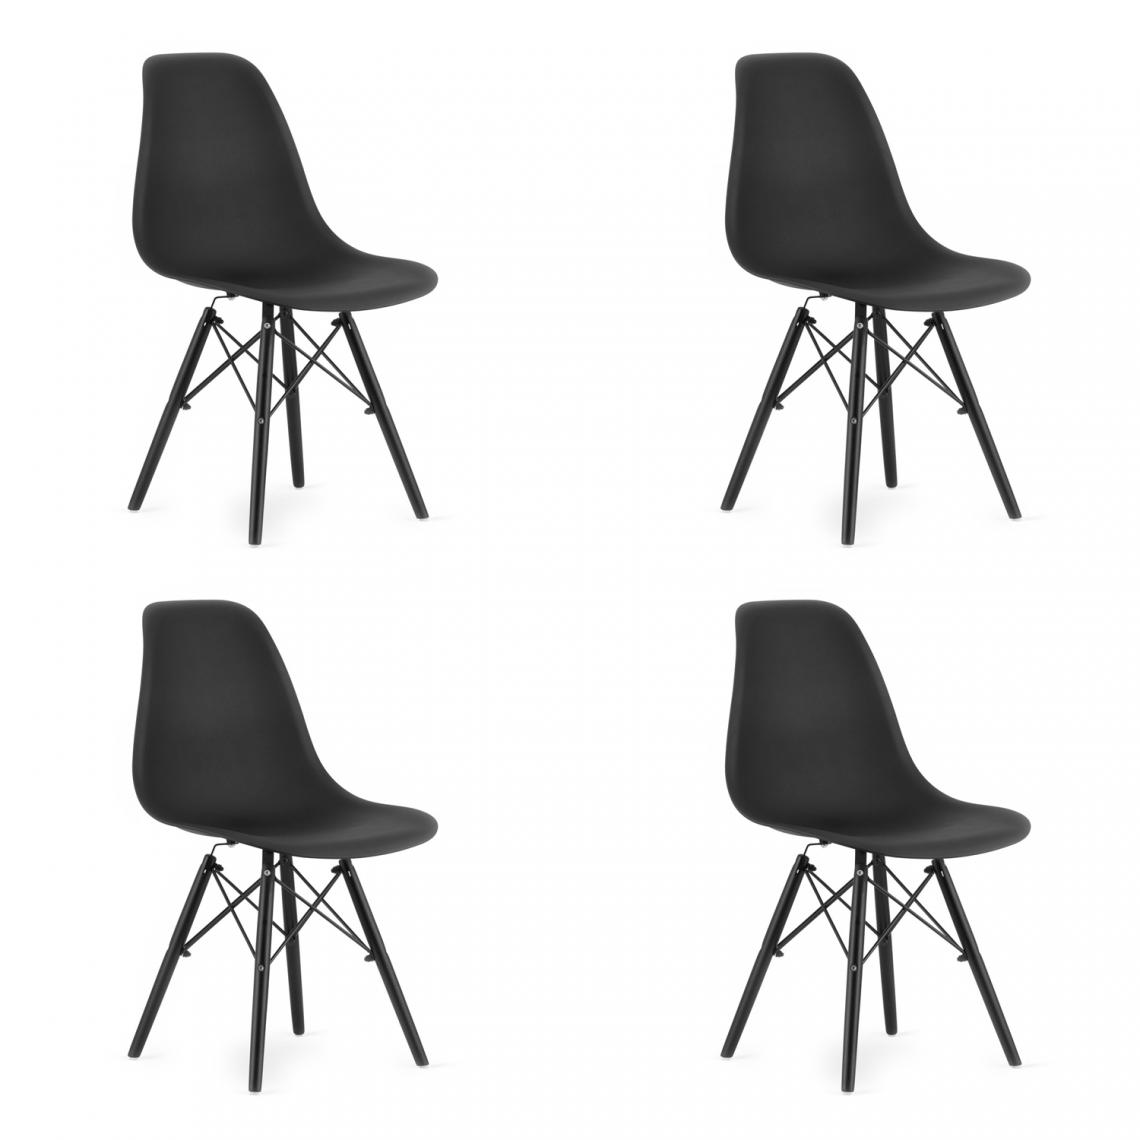 Hucoco - OSATA - Lot de 4 chaises en PP style moderne salon/cuisine - 81x54x46 cm - Chaise de salle à manger - Noir - Chaises